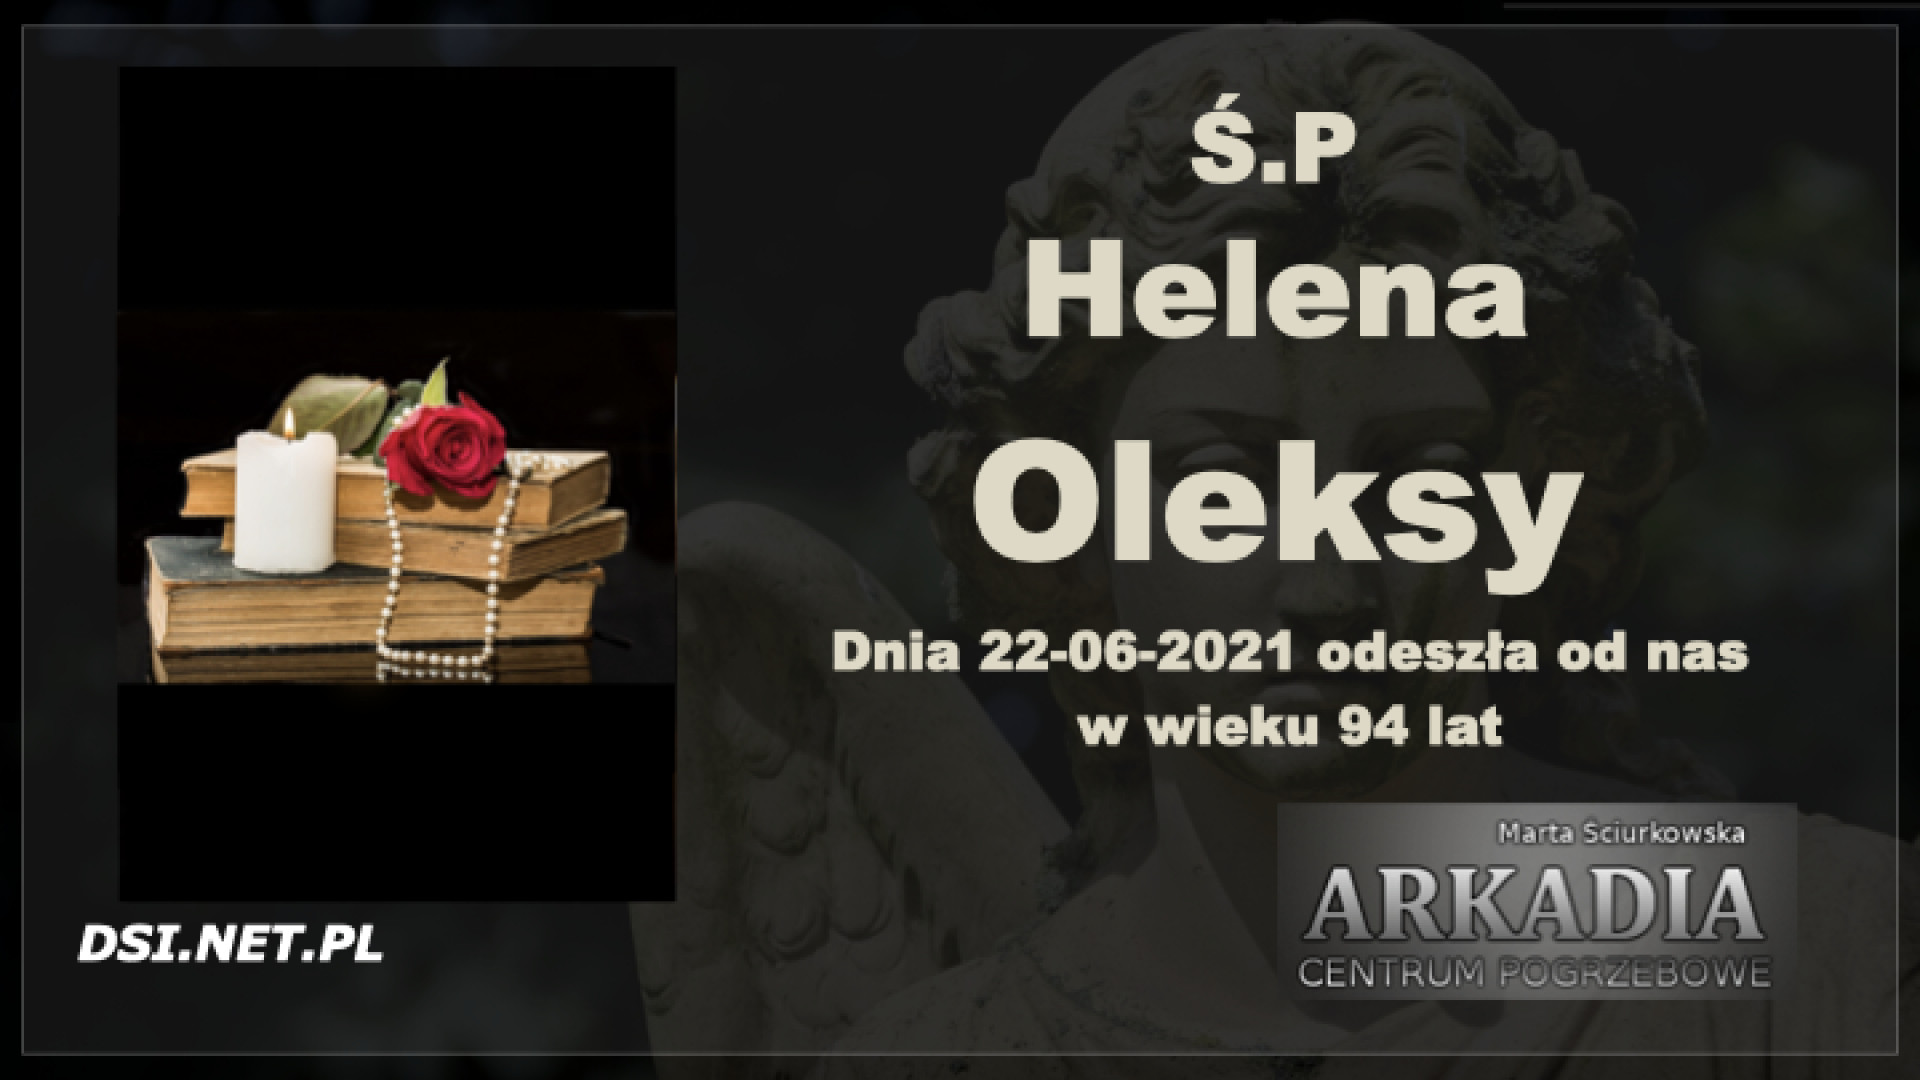 Ś.P. Helena Oleksy